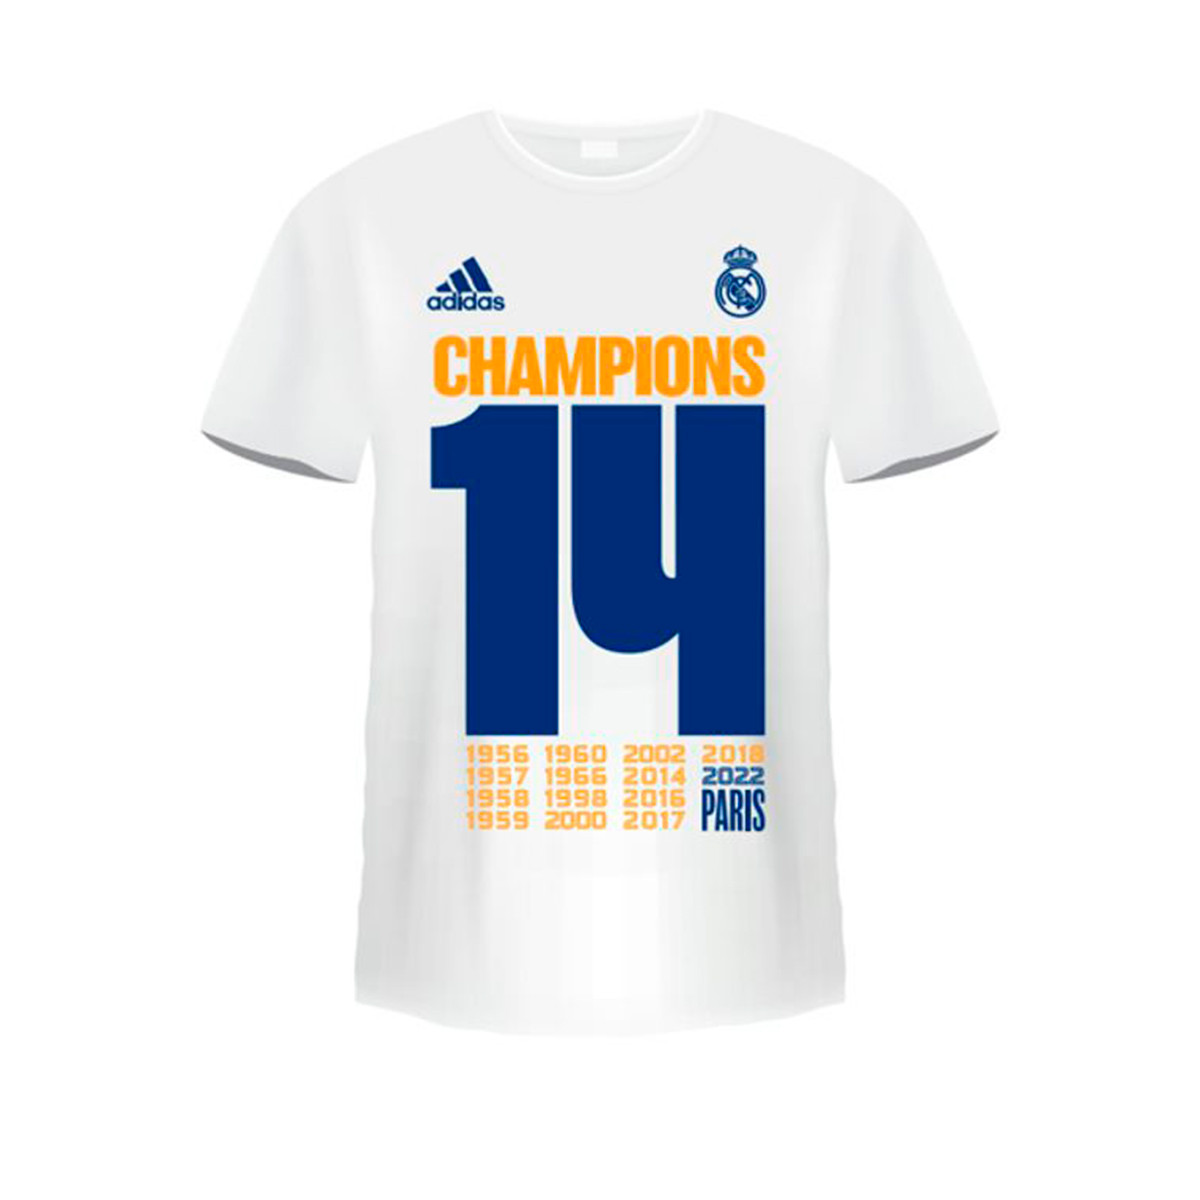 Mexiko Fan T-Shirt Fußball Retro Shirt Trikot Weiß Unisex S M L XL XXL XXXL 